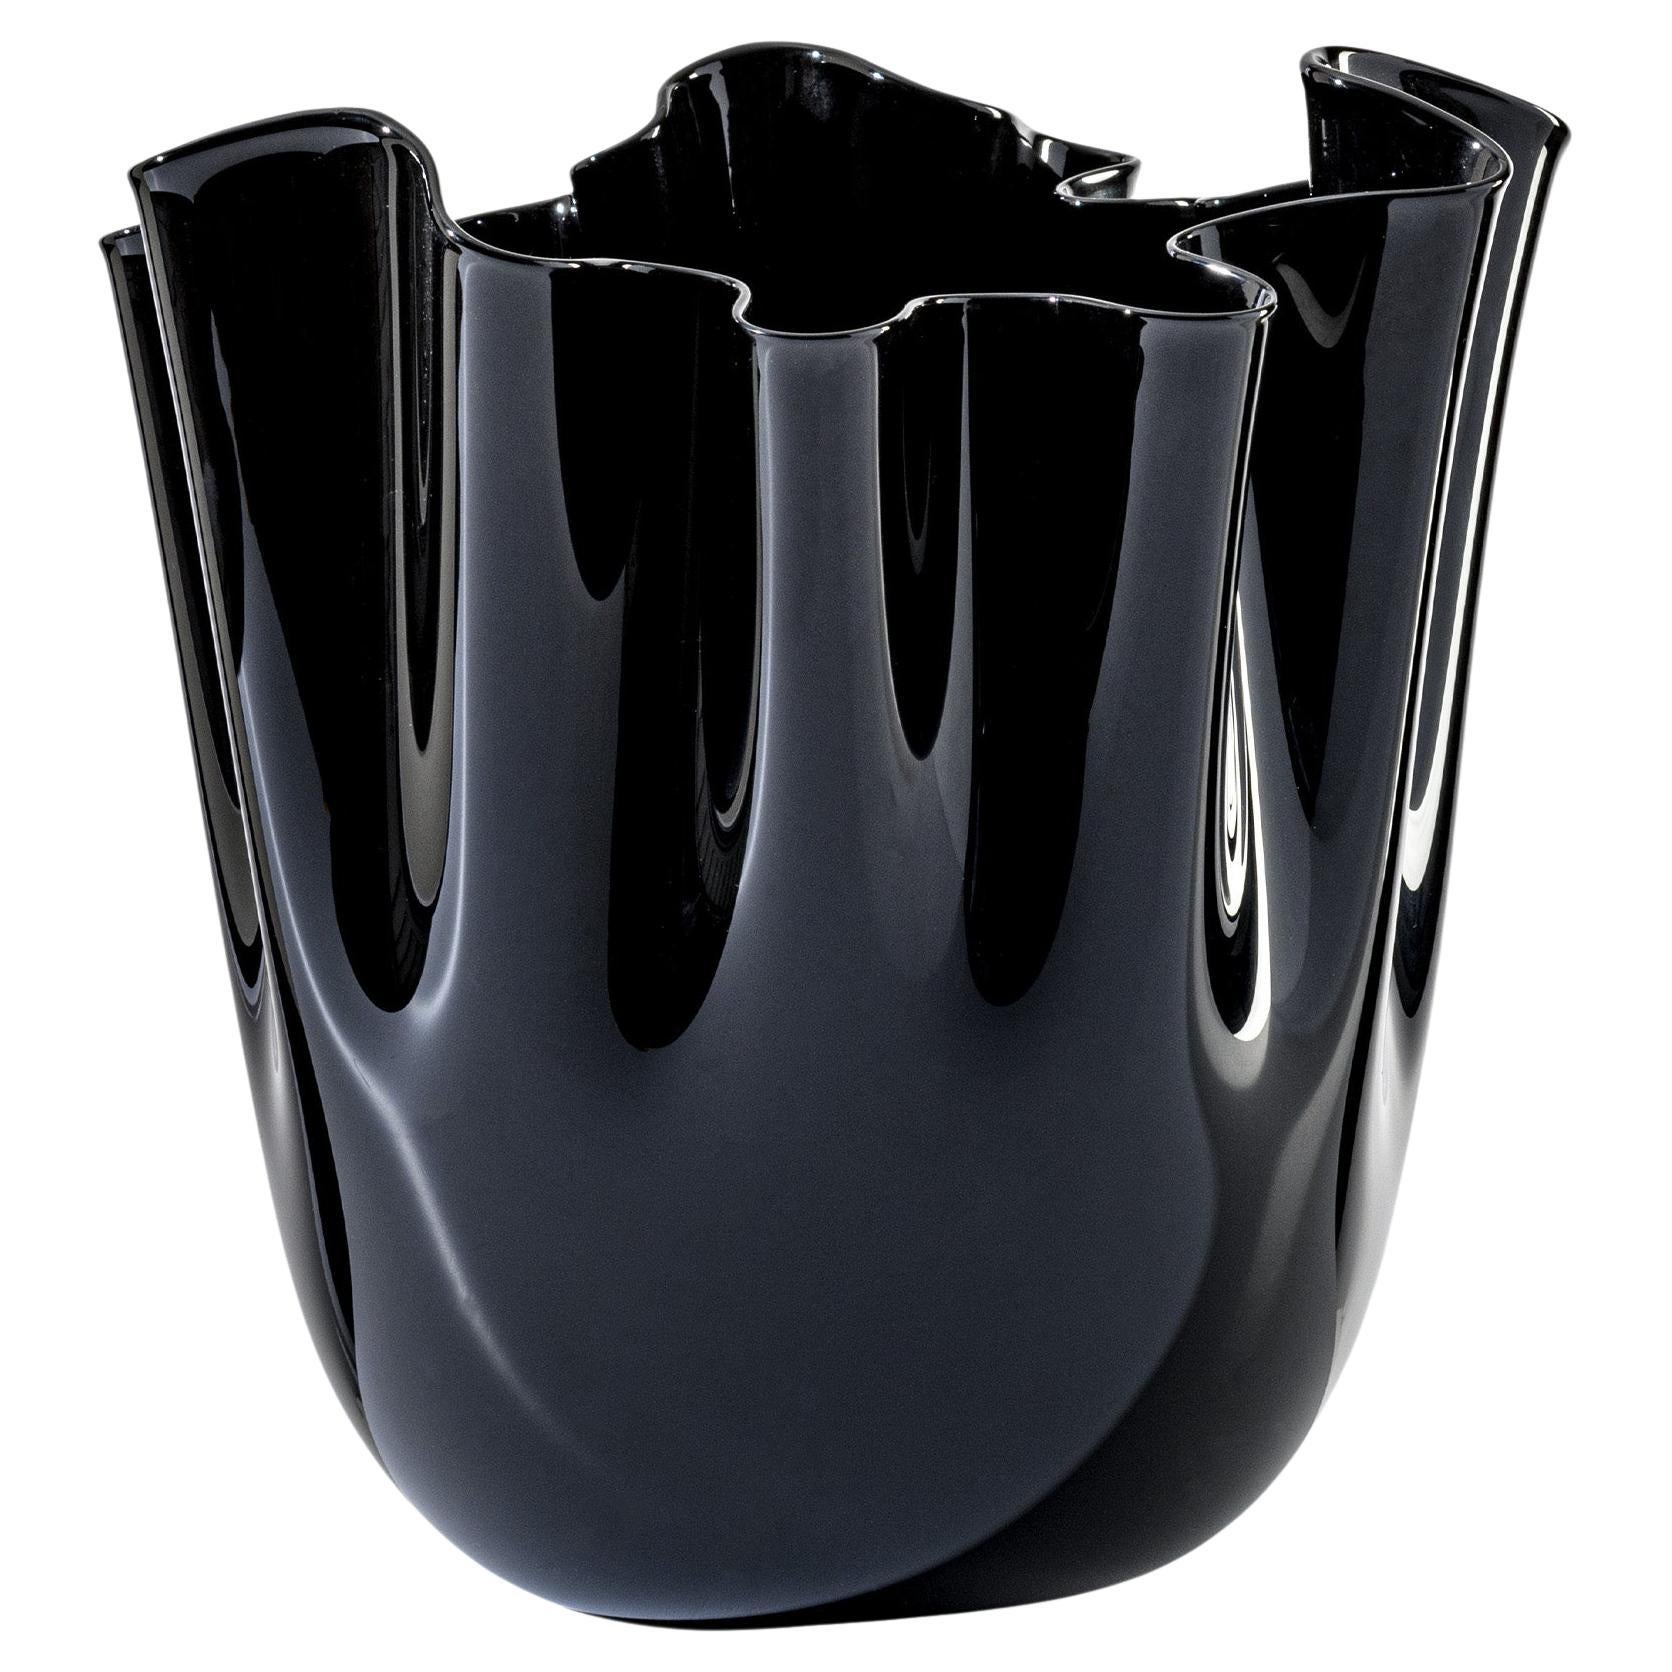 Fazzoletto Opalino Large Glass Vase in Black by Fulvio Bianconi and Venini For Sale